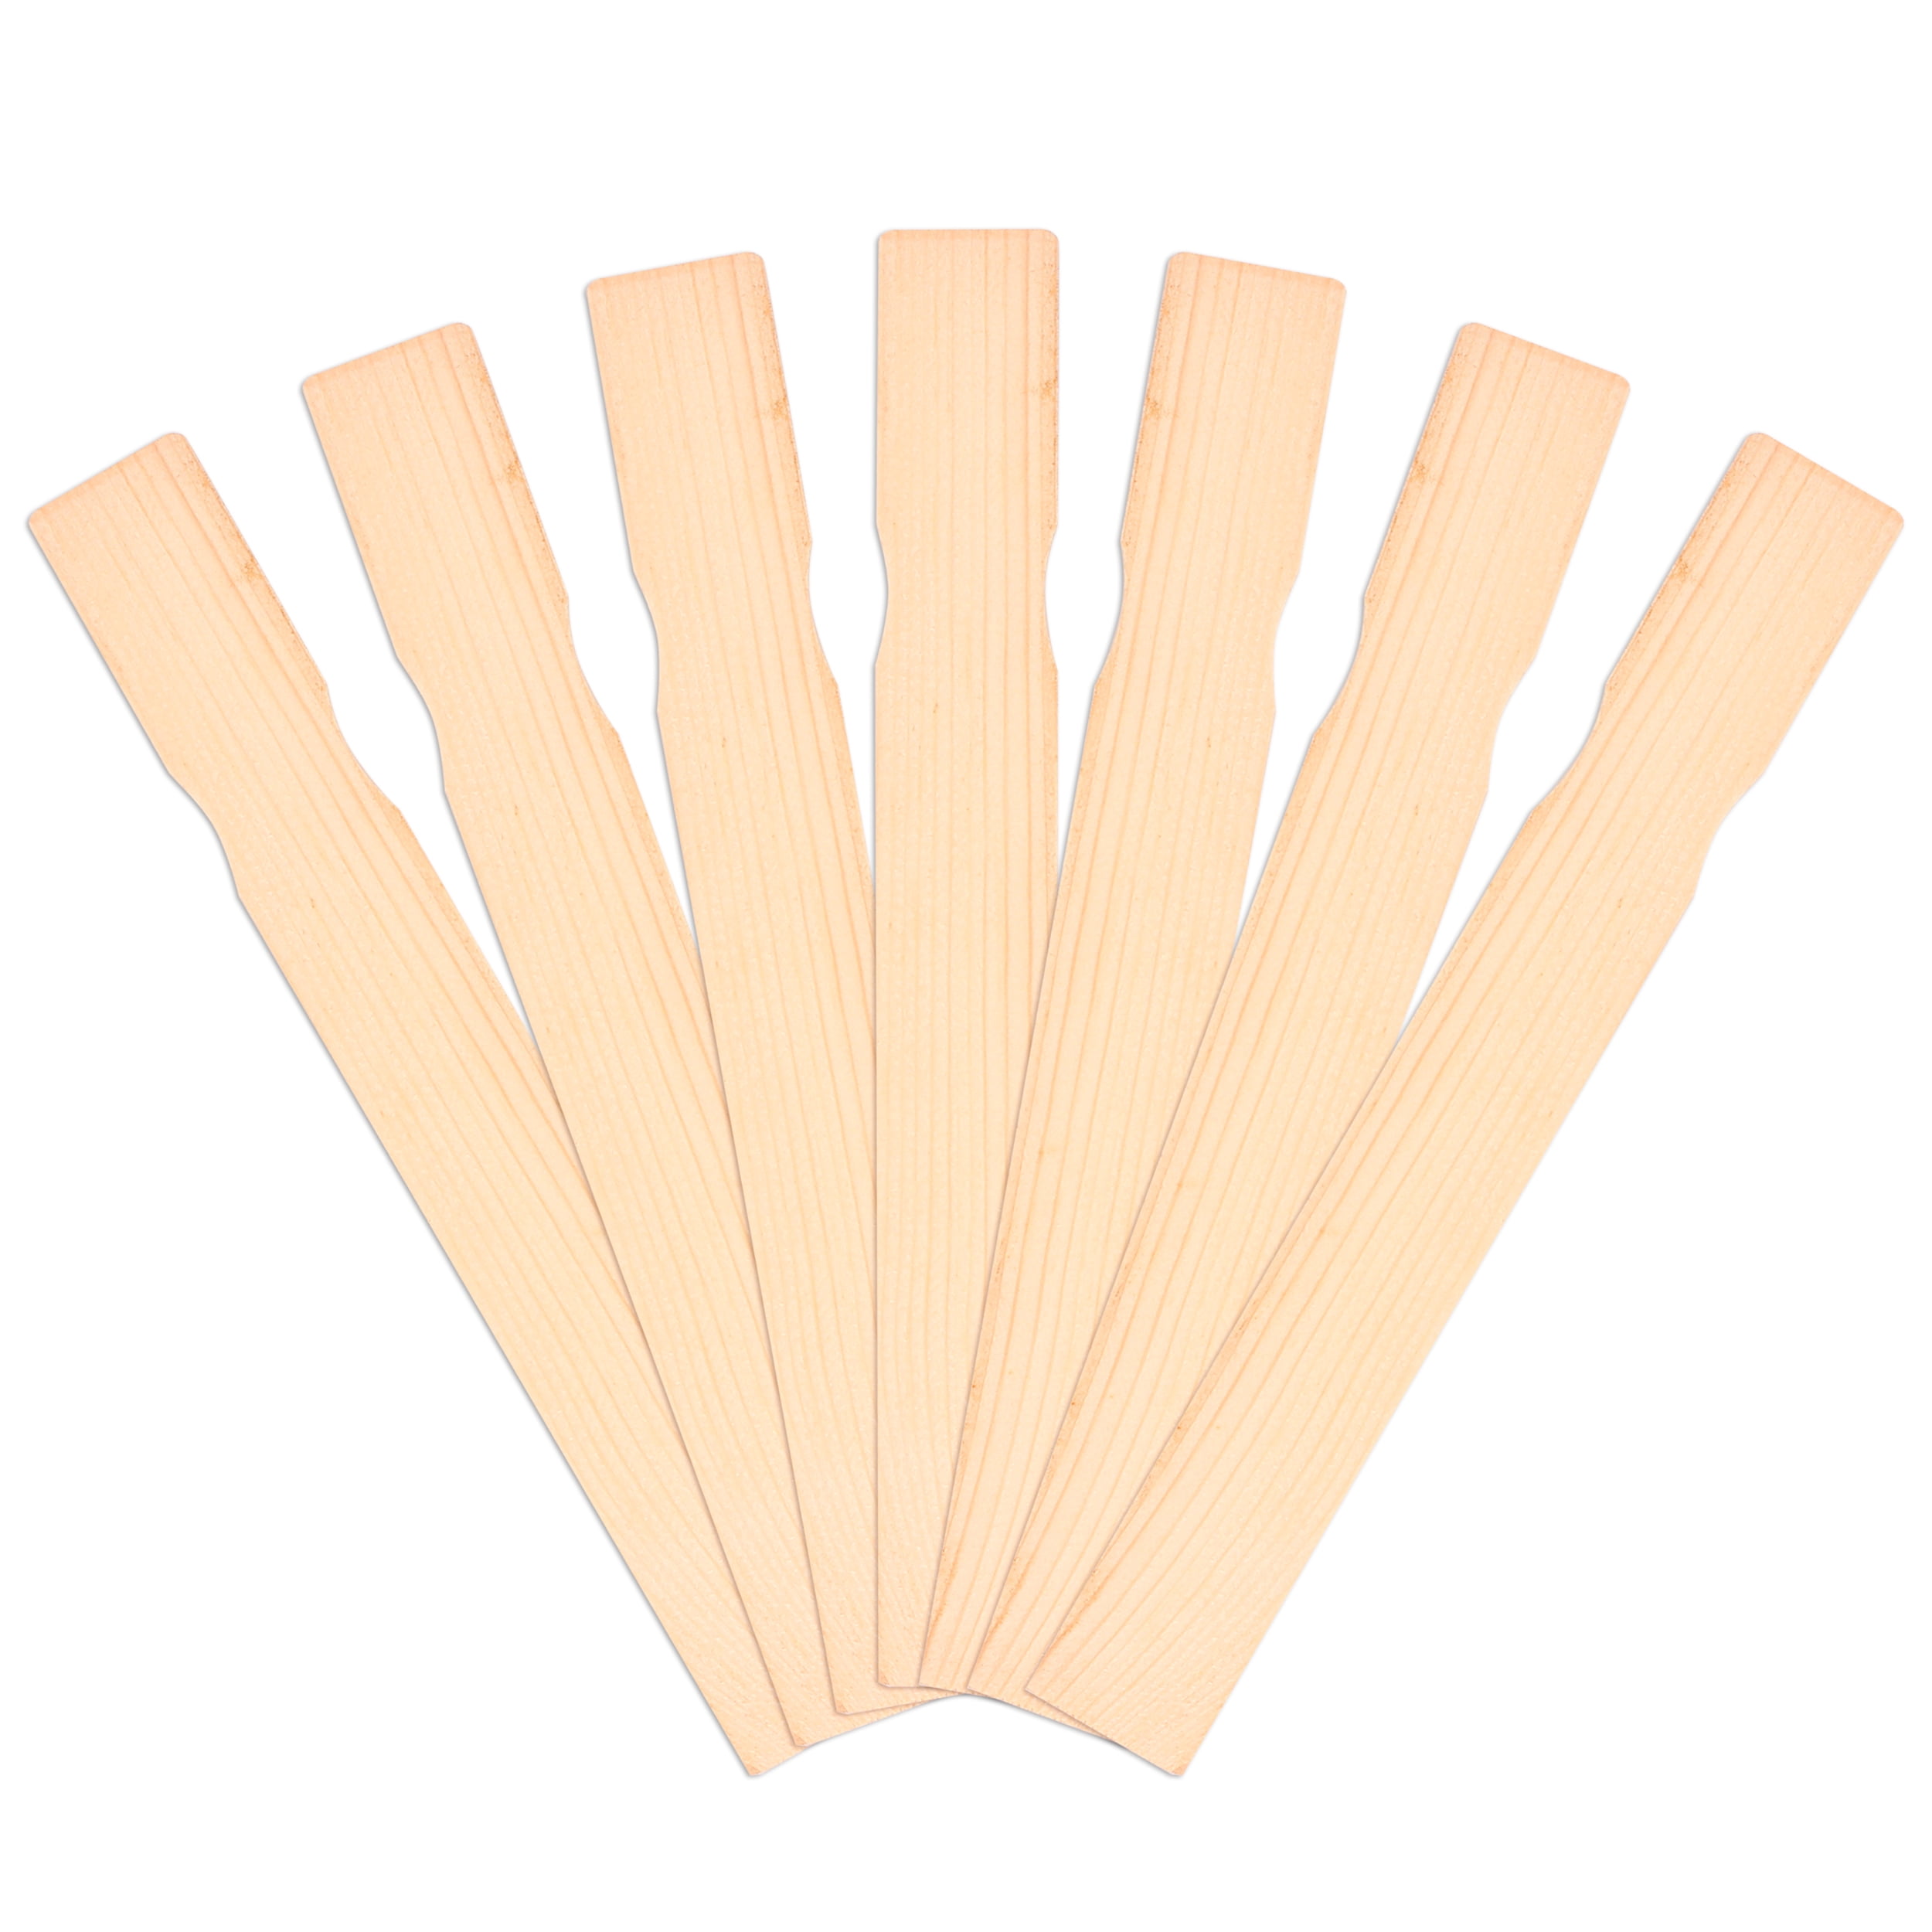 Wooden Paint Stir Sticks